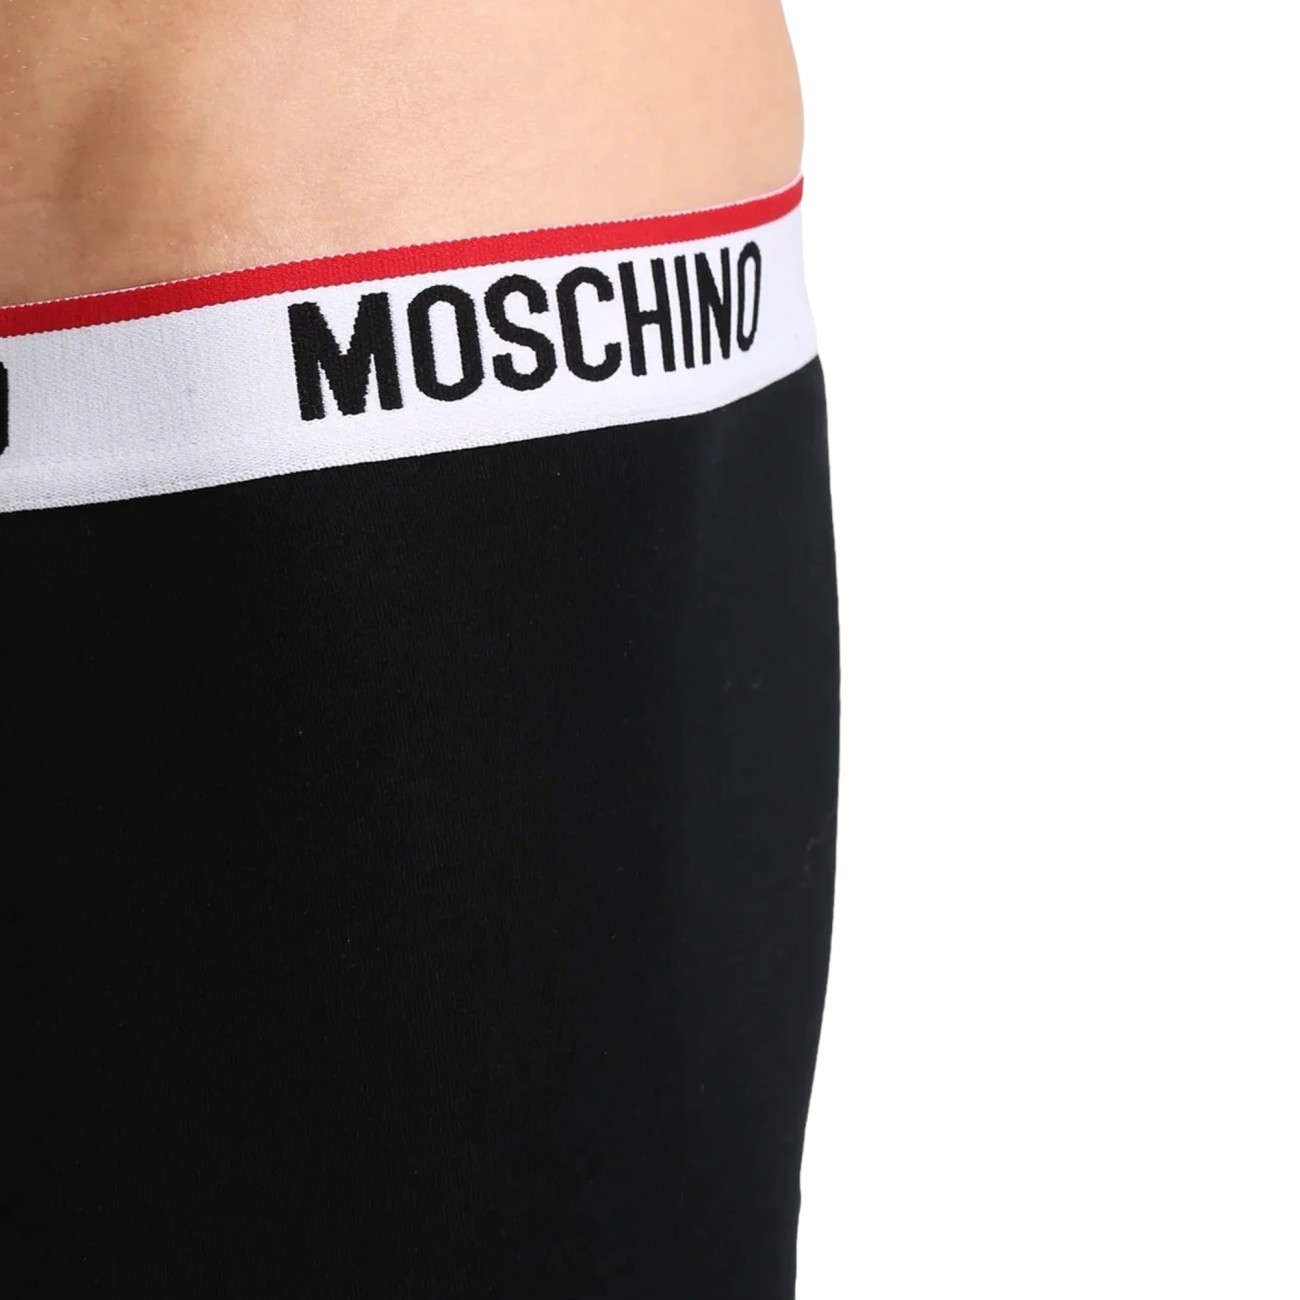 Moschino men's bipack boxers